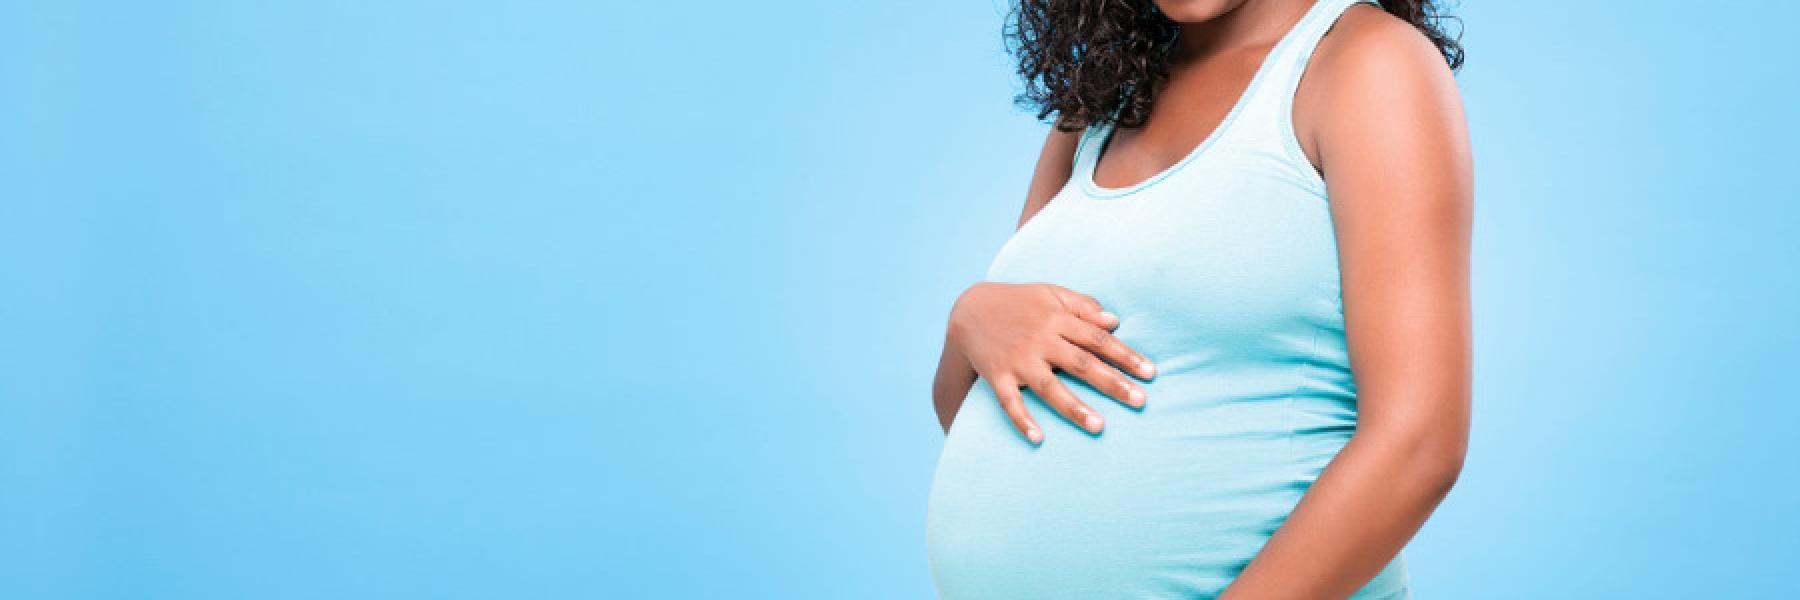 7 علاجات منزلية آمنة للتخلص من الغازات أثناء الحمل